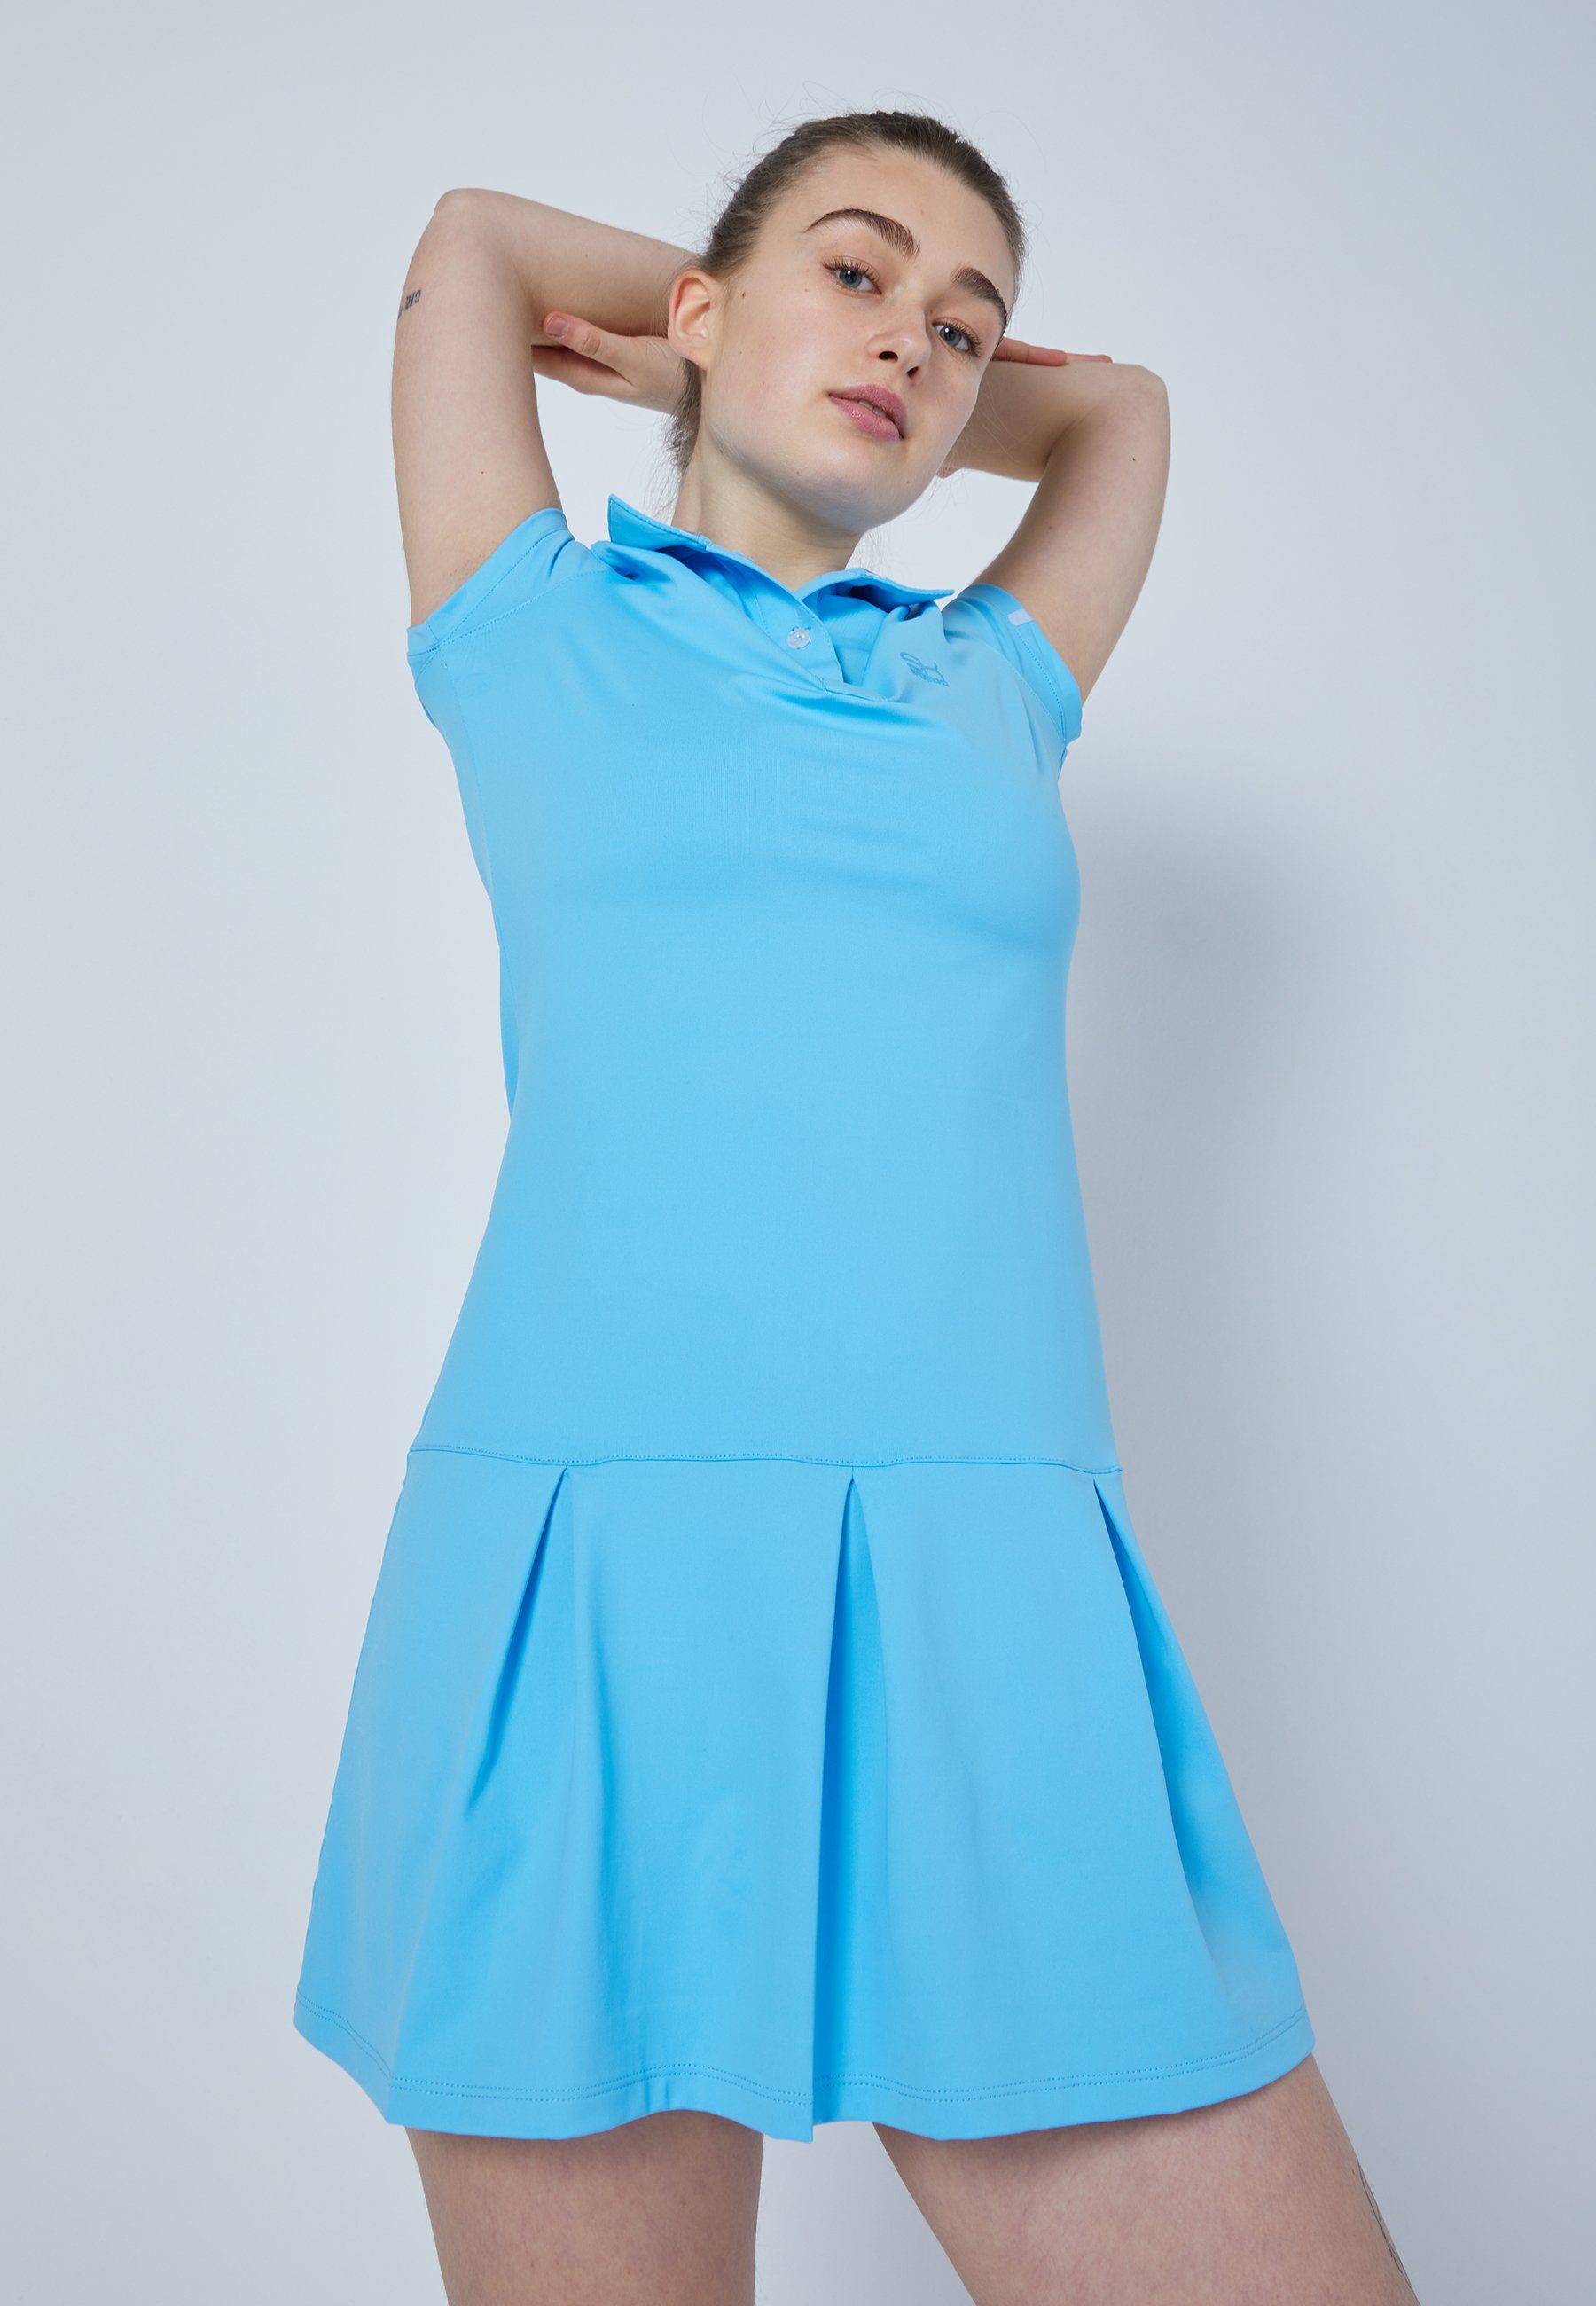 Tenniskleid & SPORTKIND Mädchen Golf Kleid Polo hellblau Damen